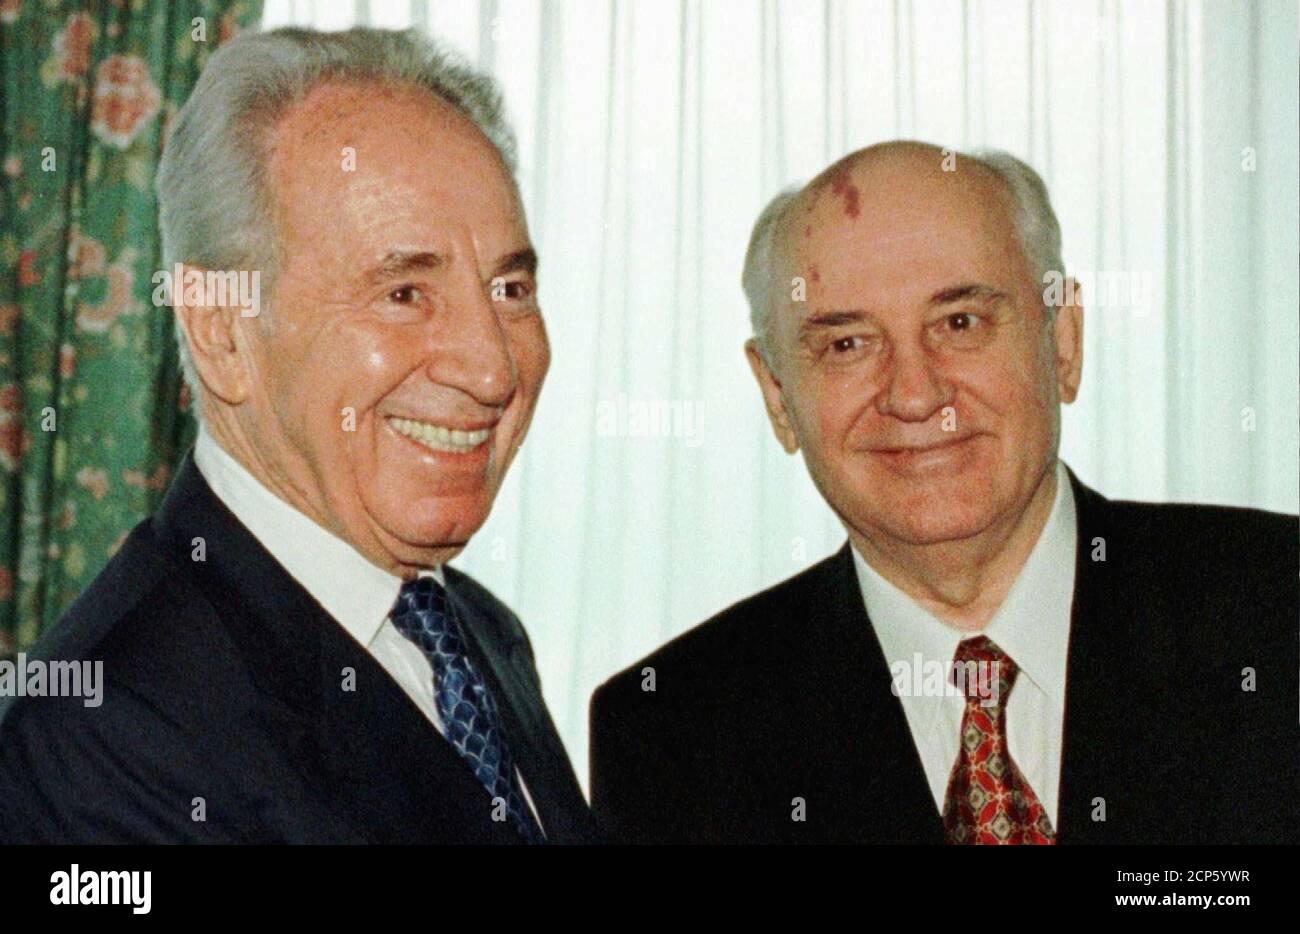 Der ehemalige israelische Premierminister Shimon Peres (L) und der ehemalige sowjetische Führer Michail Gorbatschow lächeln, während sie für Fotografen bei einem Treffen des Grünen Kreuzes in Genf am 5. Juni posieren. Das Grüne Kreuz ist eine in Genf ansässige Umweltorganisation, die nach dem Erdgipfel in Rio de Janeiro gegründet wurde, wobei Gorbatschow Präsident und Peres Mitglied des Vorstands ist. GRÜNES KREUZ Stockfoto